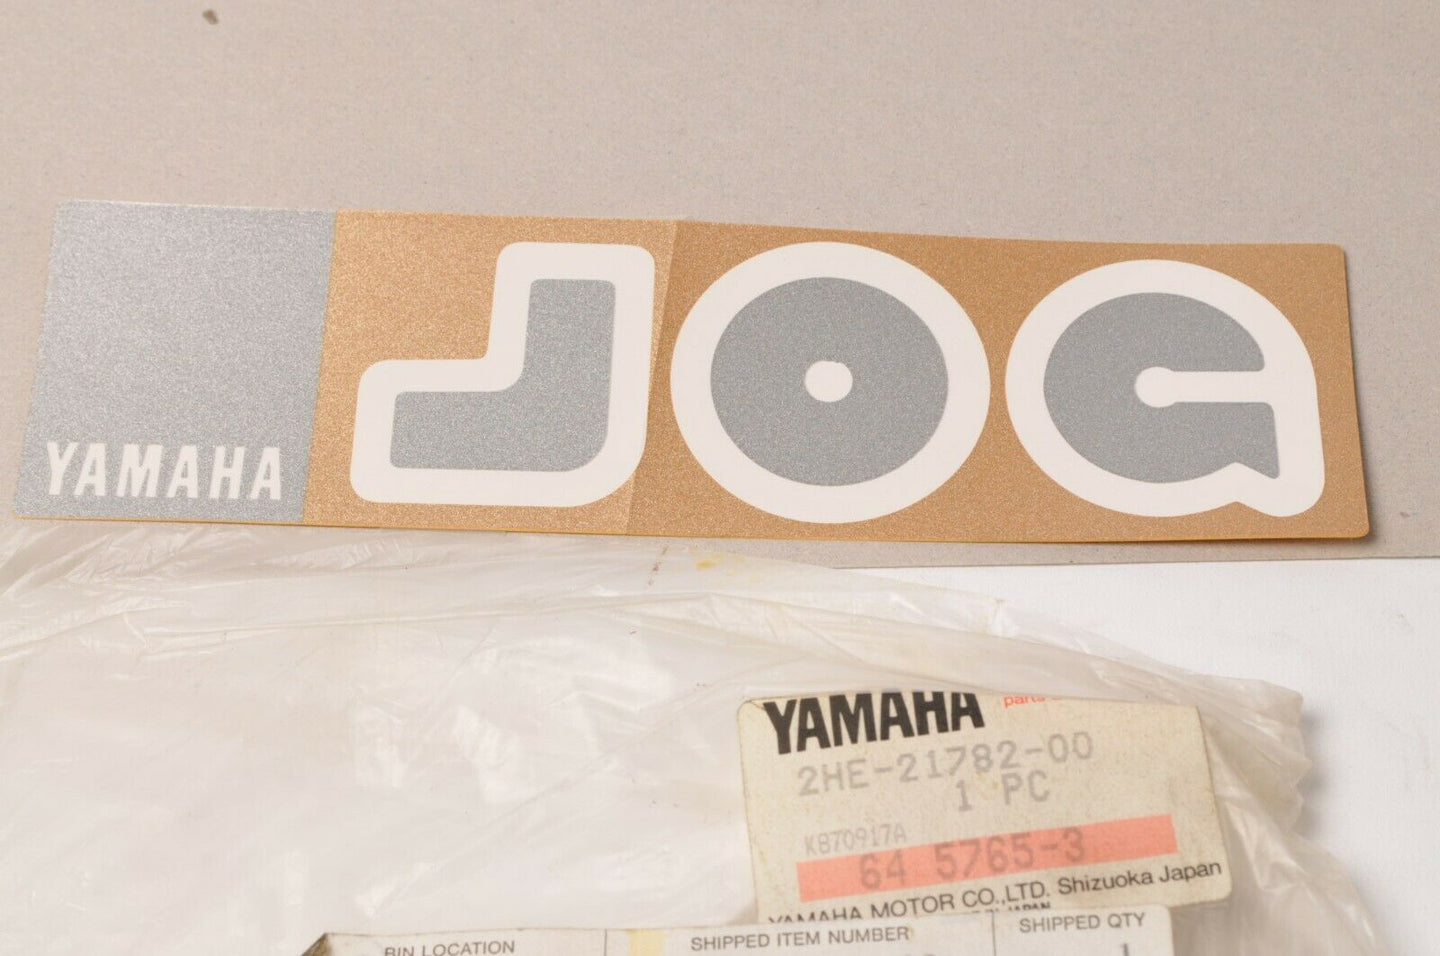 New NOS Genuine Yamaha 2HE-21782-00 Decal Emblem JOG CE50 1987 Riva Side Cover